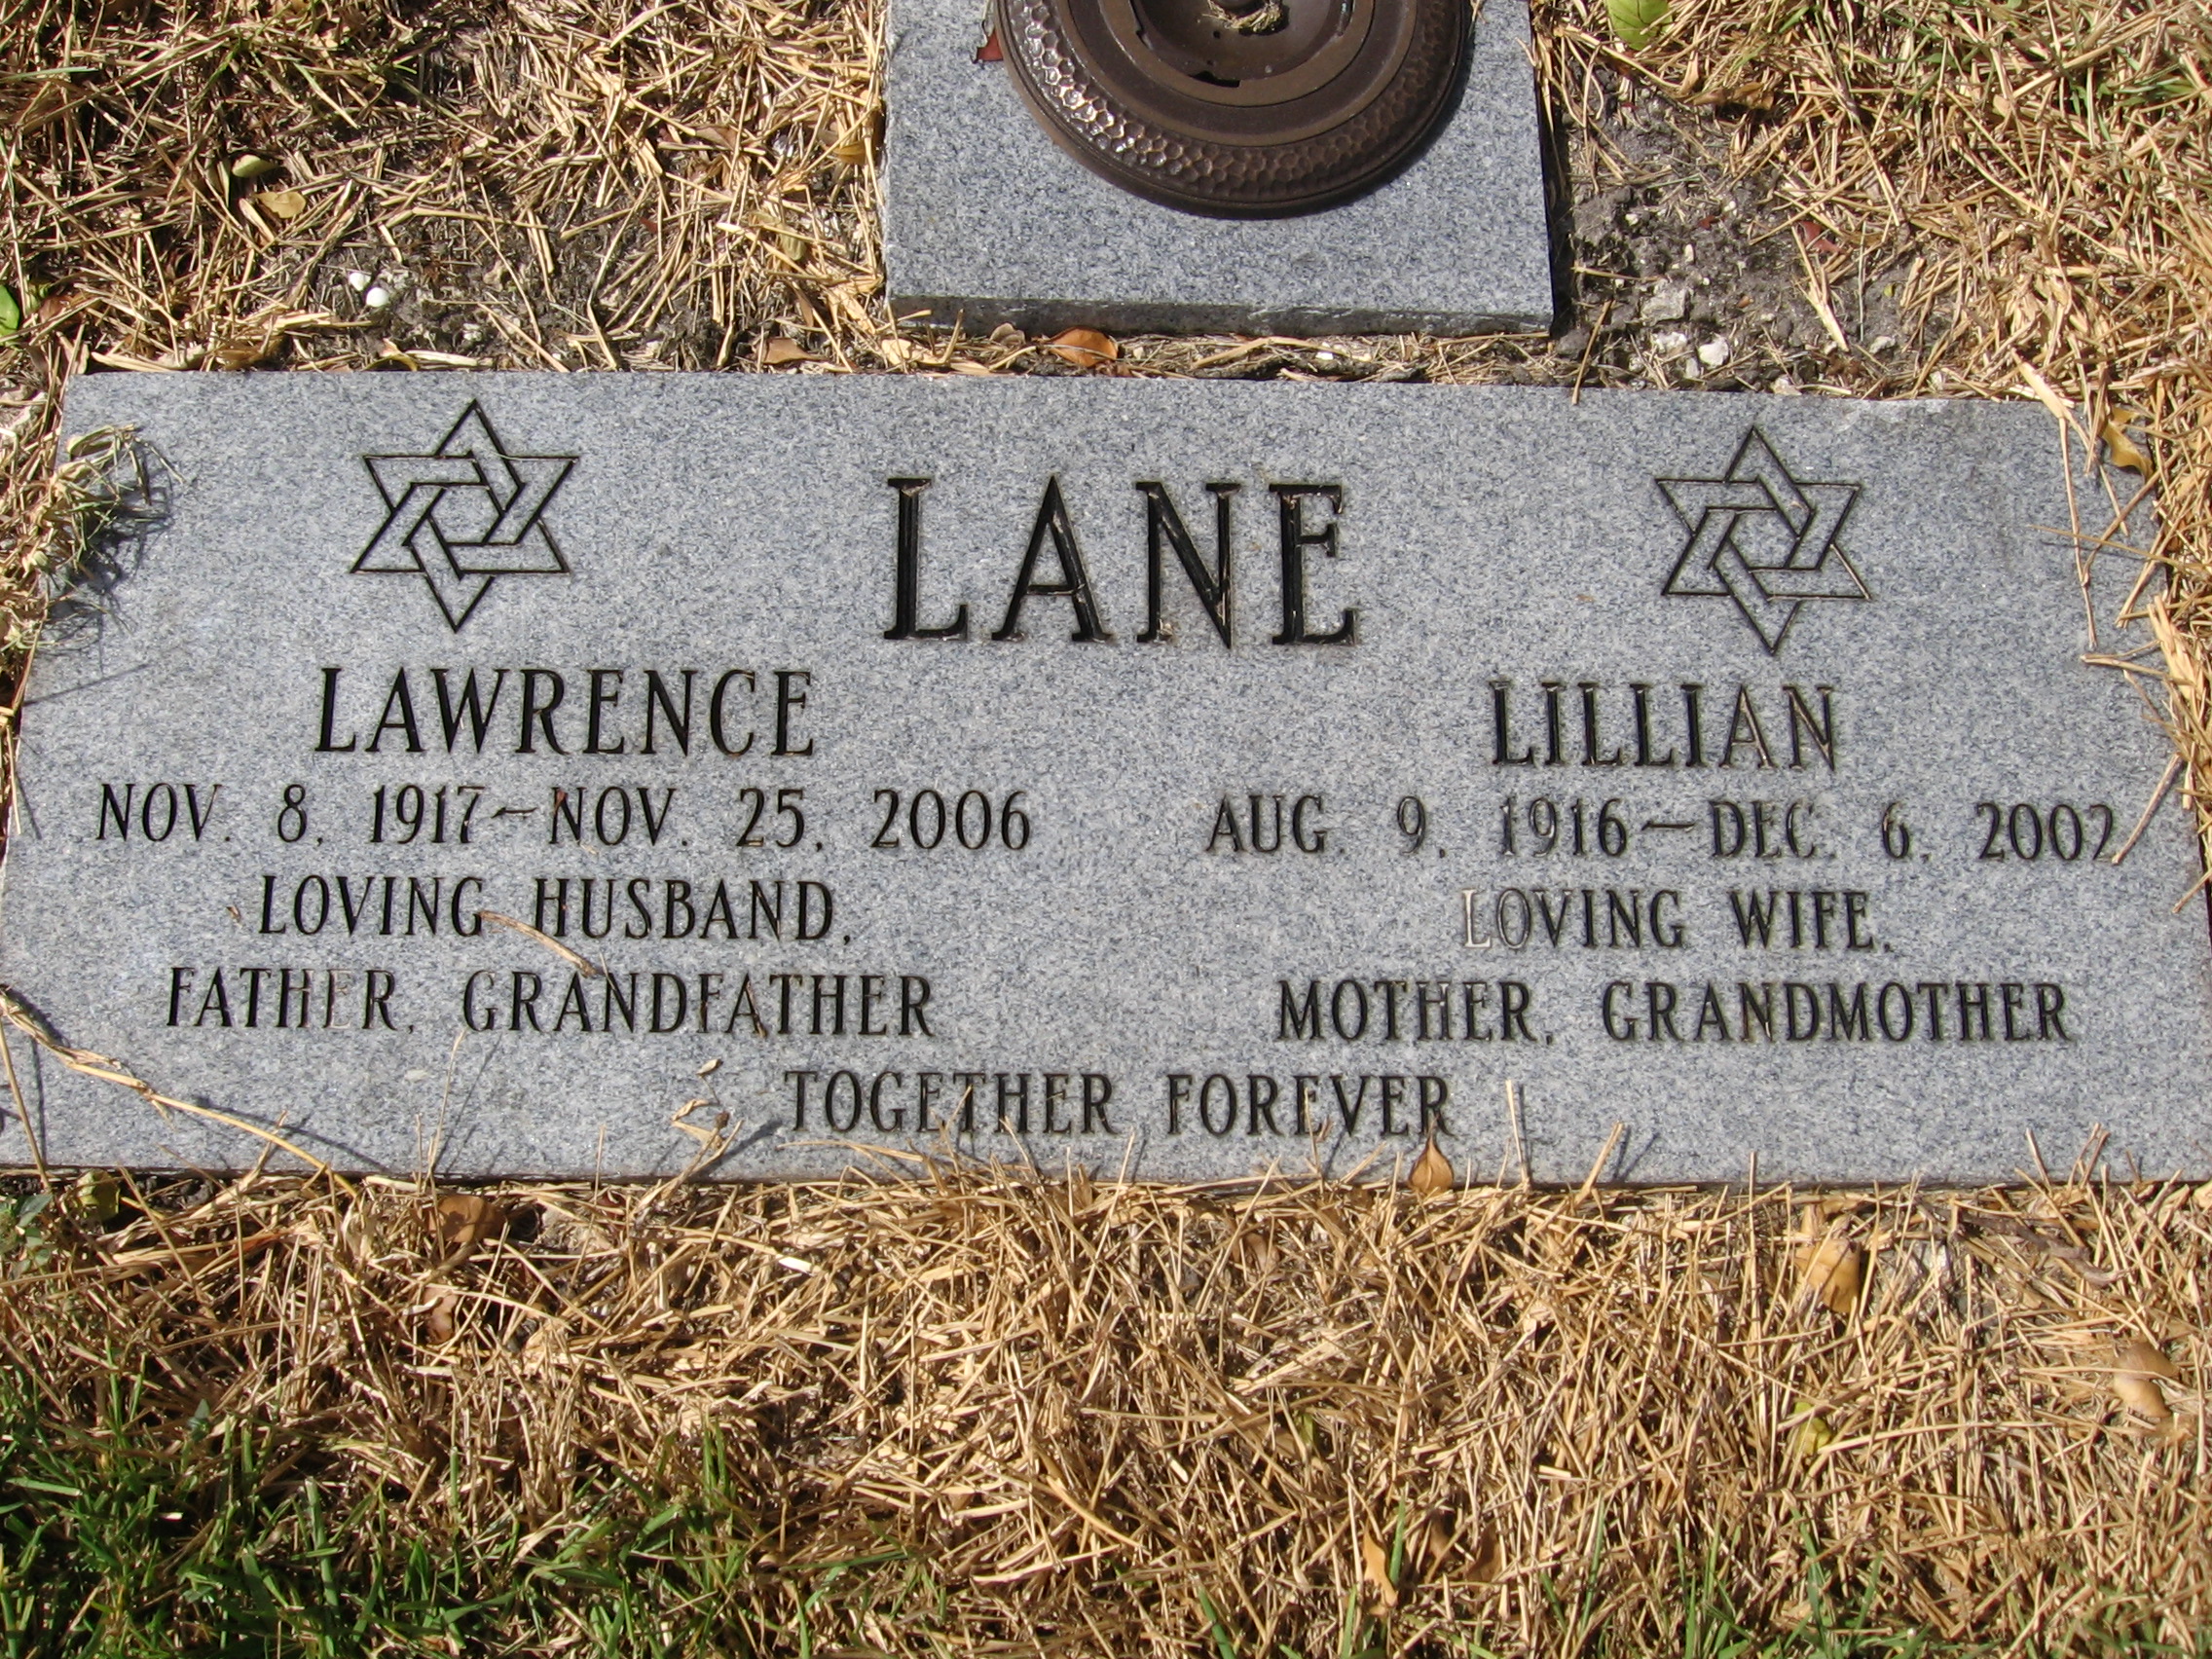 Lillian Lane